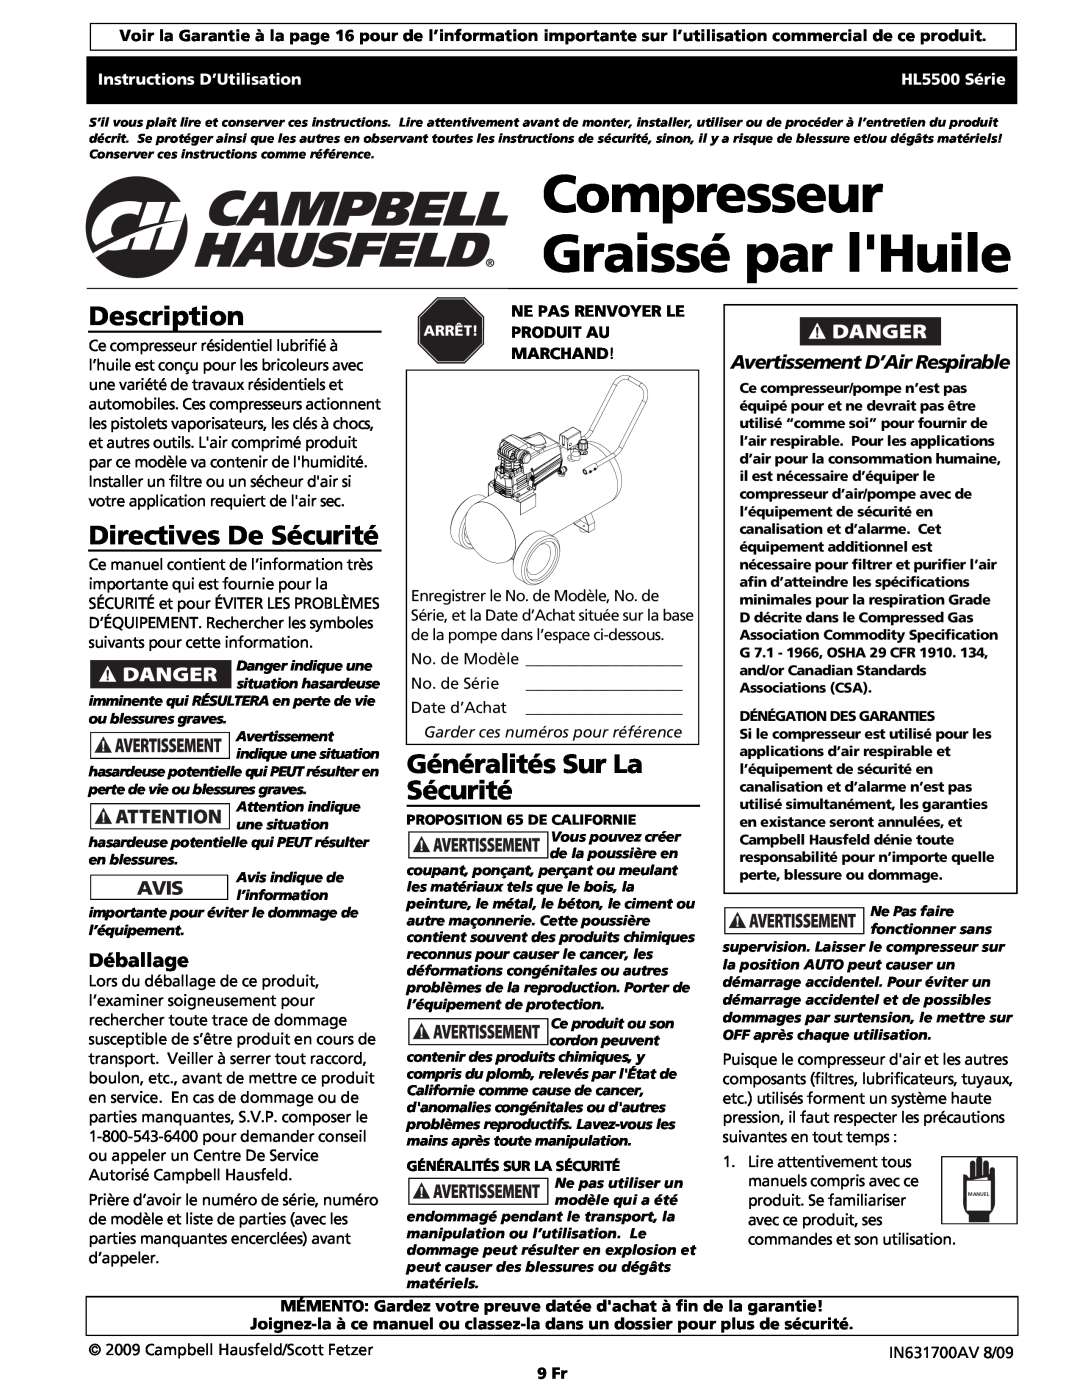 Campbell Hausfeld HS5500 Compresseur Graissé par lHuile, Directives De Sécurité, Généralités Sur La Sécurité, Déballage 